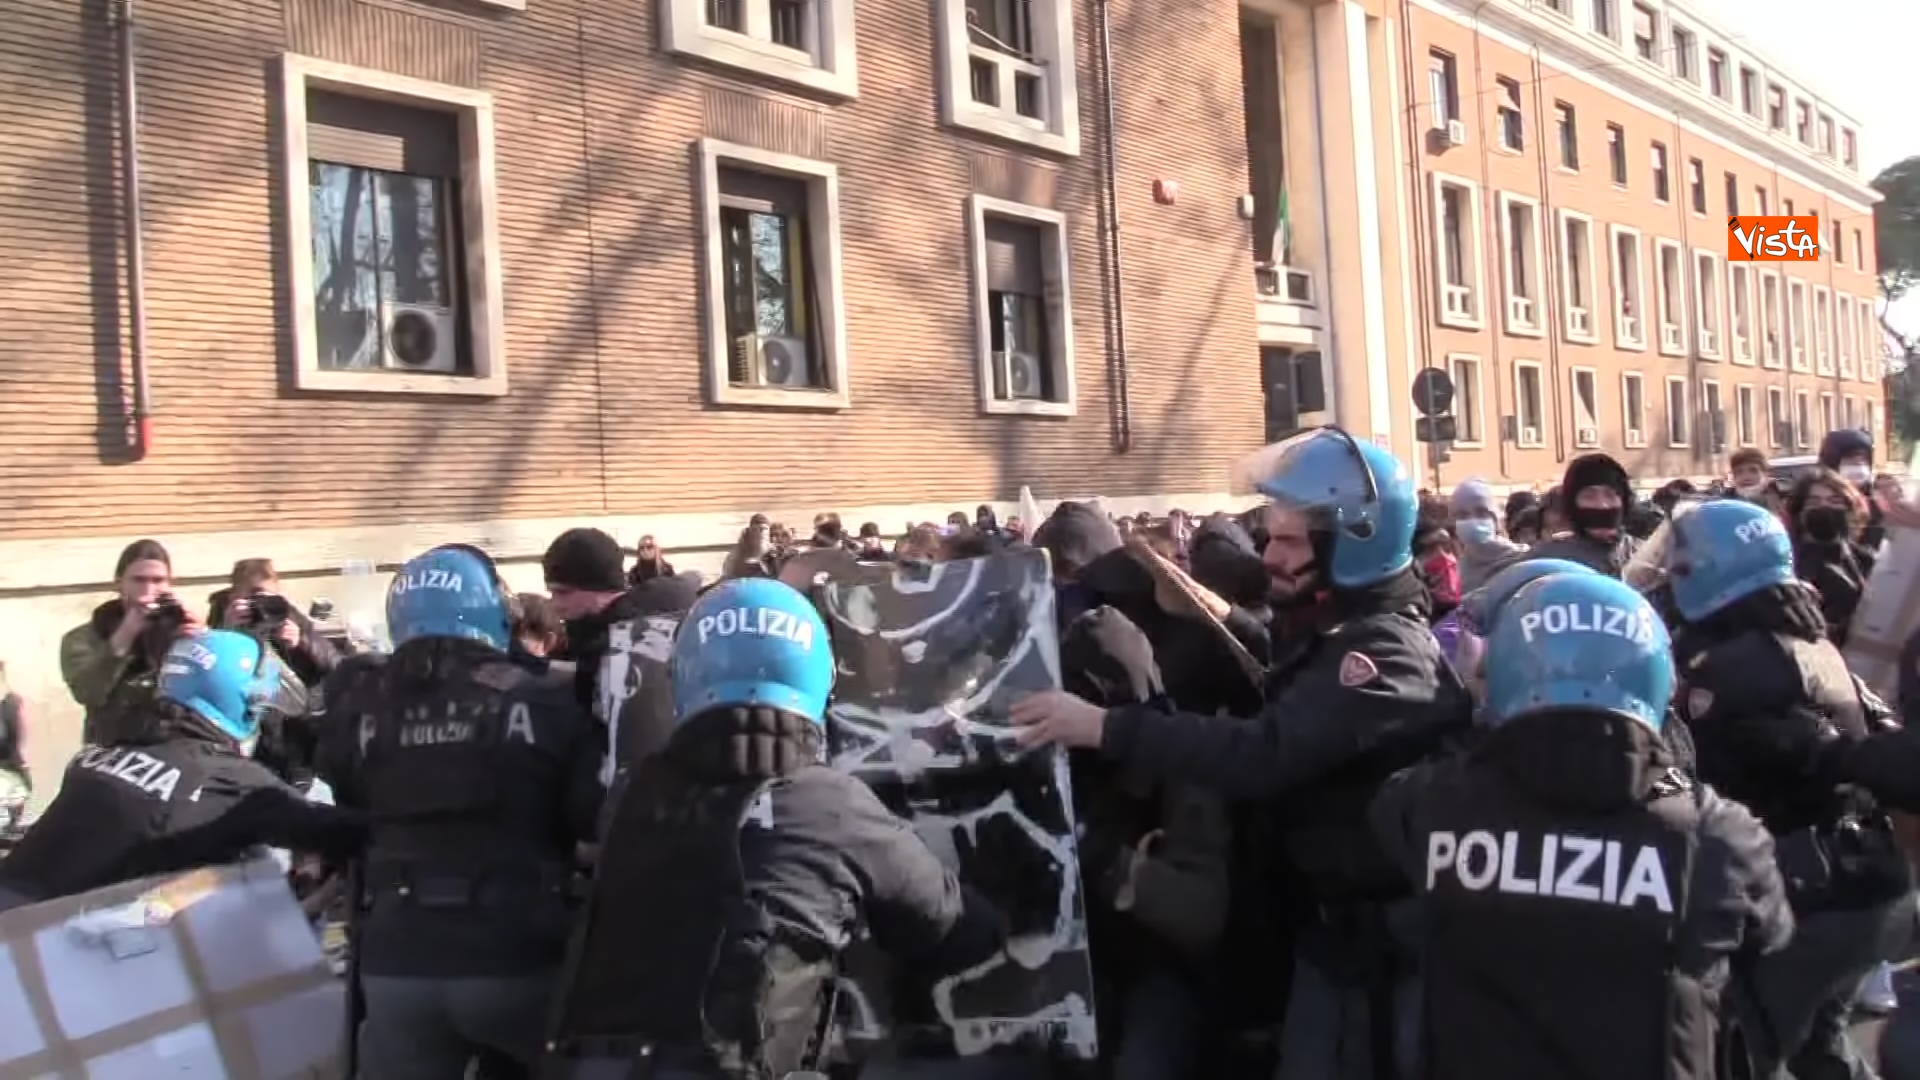 17-12-21 Dal corteo allo scontro con la Polizia le immagini della protesta degli studenti di Roma 02_564698028283940602580